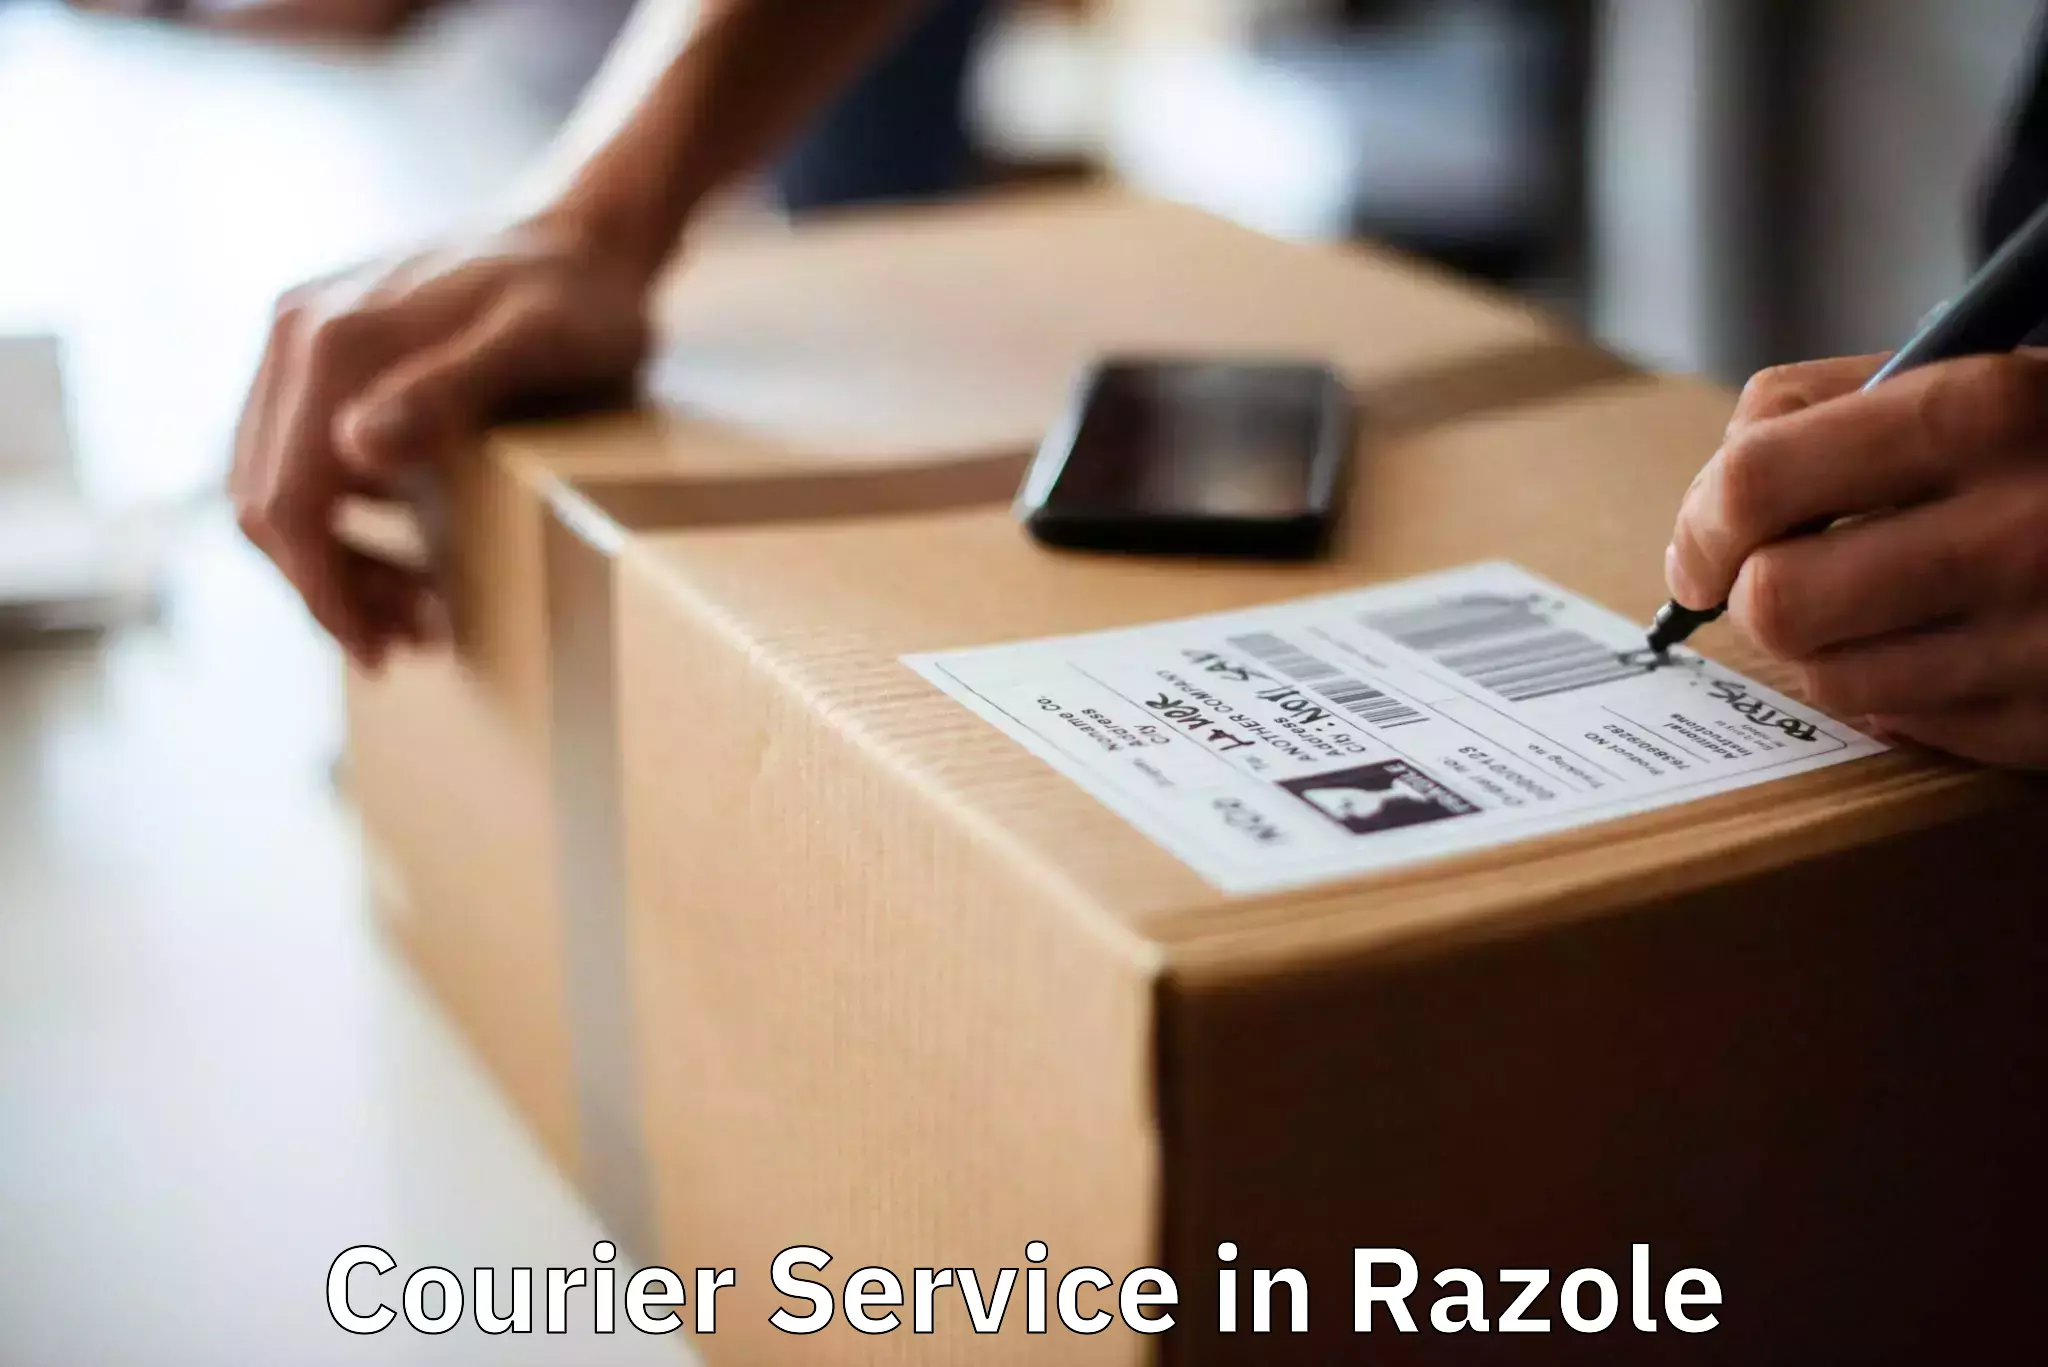 Flexible parcel services in Razole